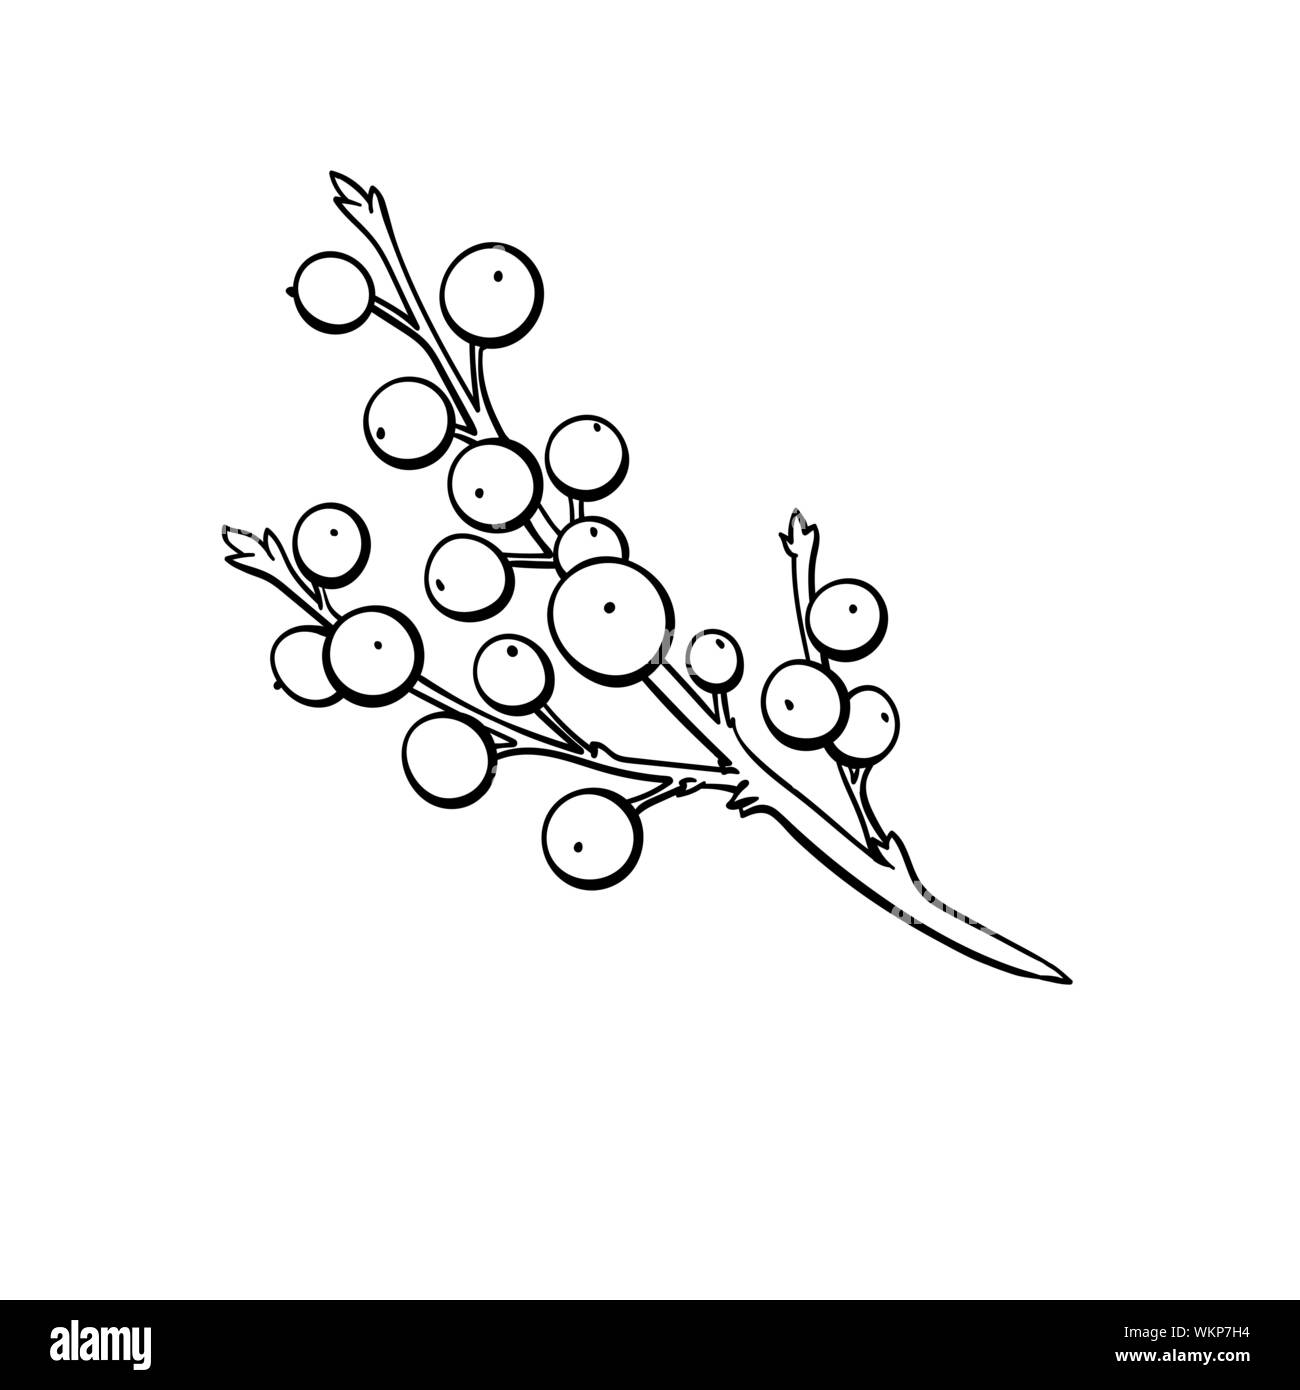 Die Mistel Bündel Hand gezeichnet Vector Illustration. Zweig mit kleinen Beeren, immergrüner Strauch Fötus Färbung Bild. Winter Forest flora, traditionelle Weihnachten Pflanze dekorativen Struktursymbol Stock Vektor